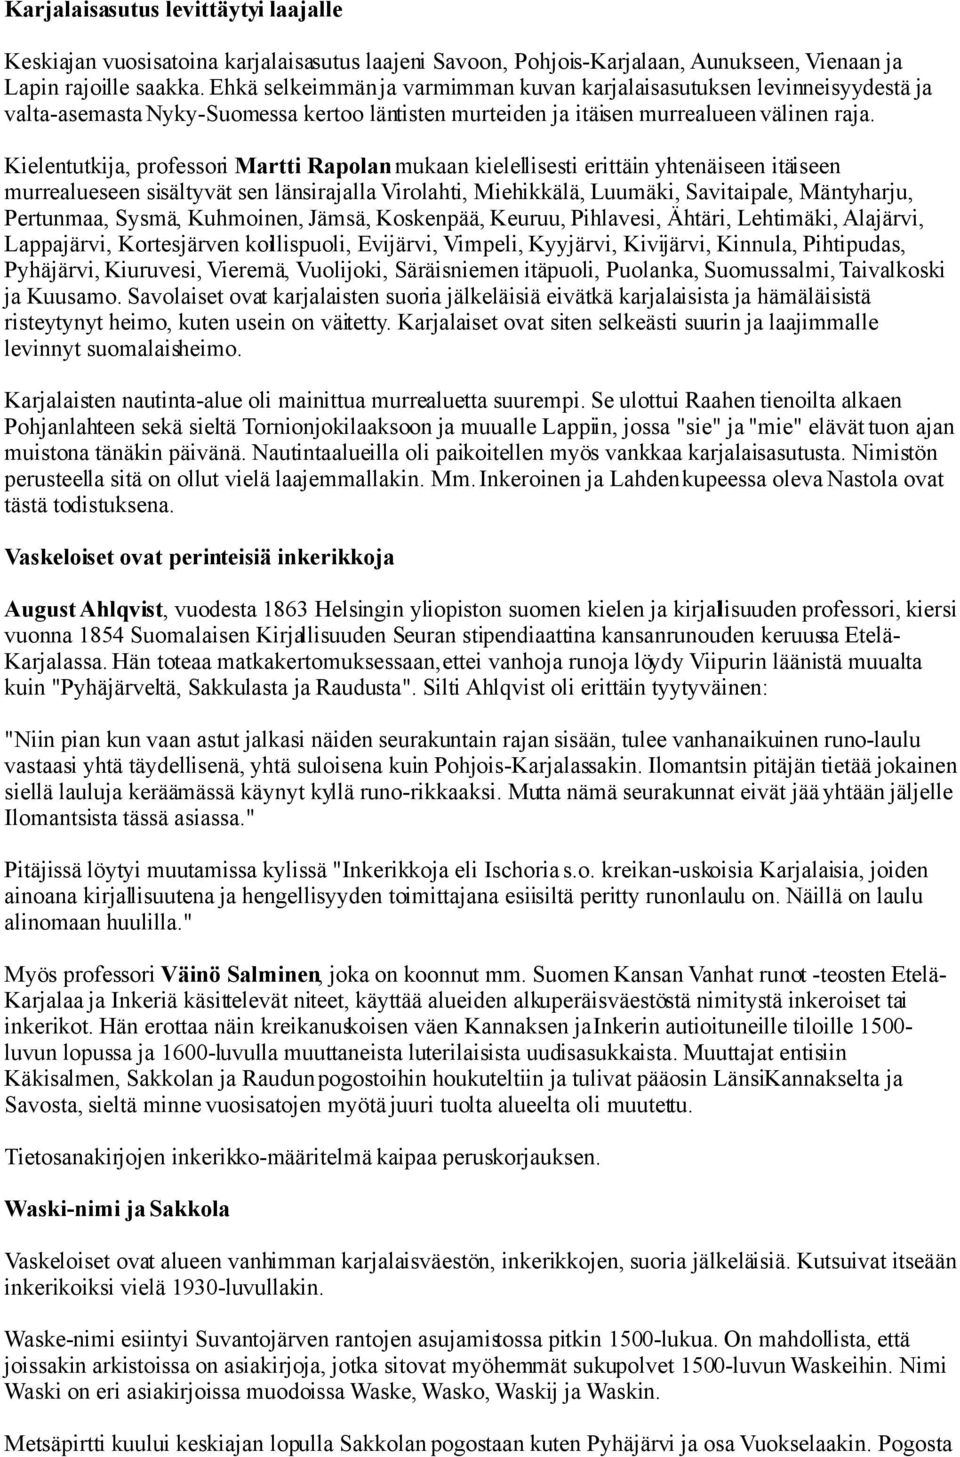 Kielentutkija, professori Martti Rapolan mukaan kielellisesti erittäin yhtenäiseen itäiseen murrealueseen sisältyvät sen länsirajalla Virolahti, Miehikkälä, Luumäki, Savitaipale, Mäntyharju,